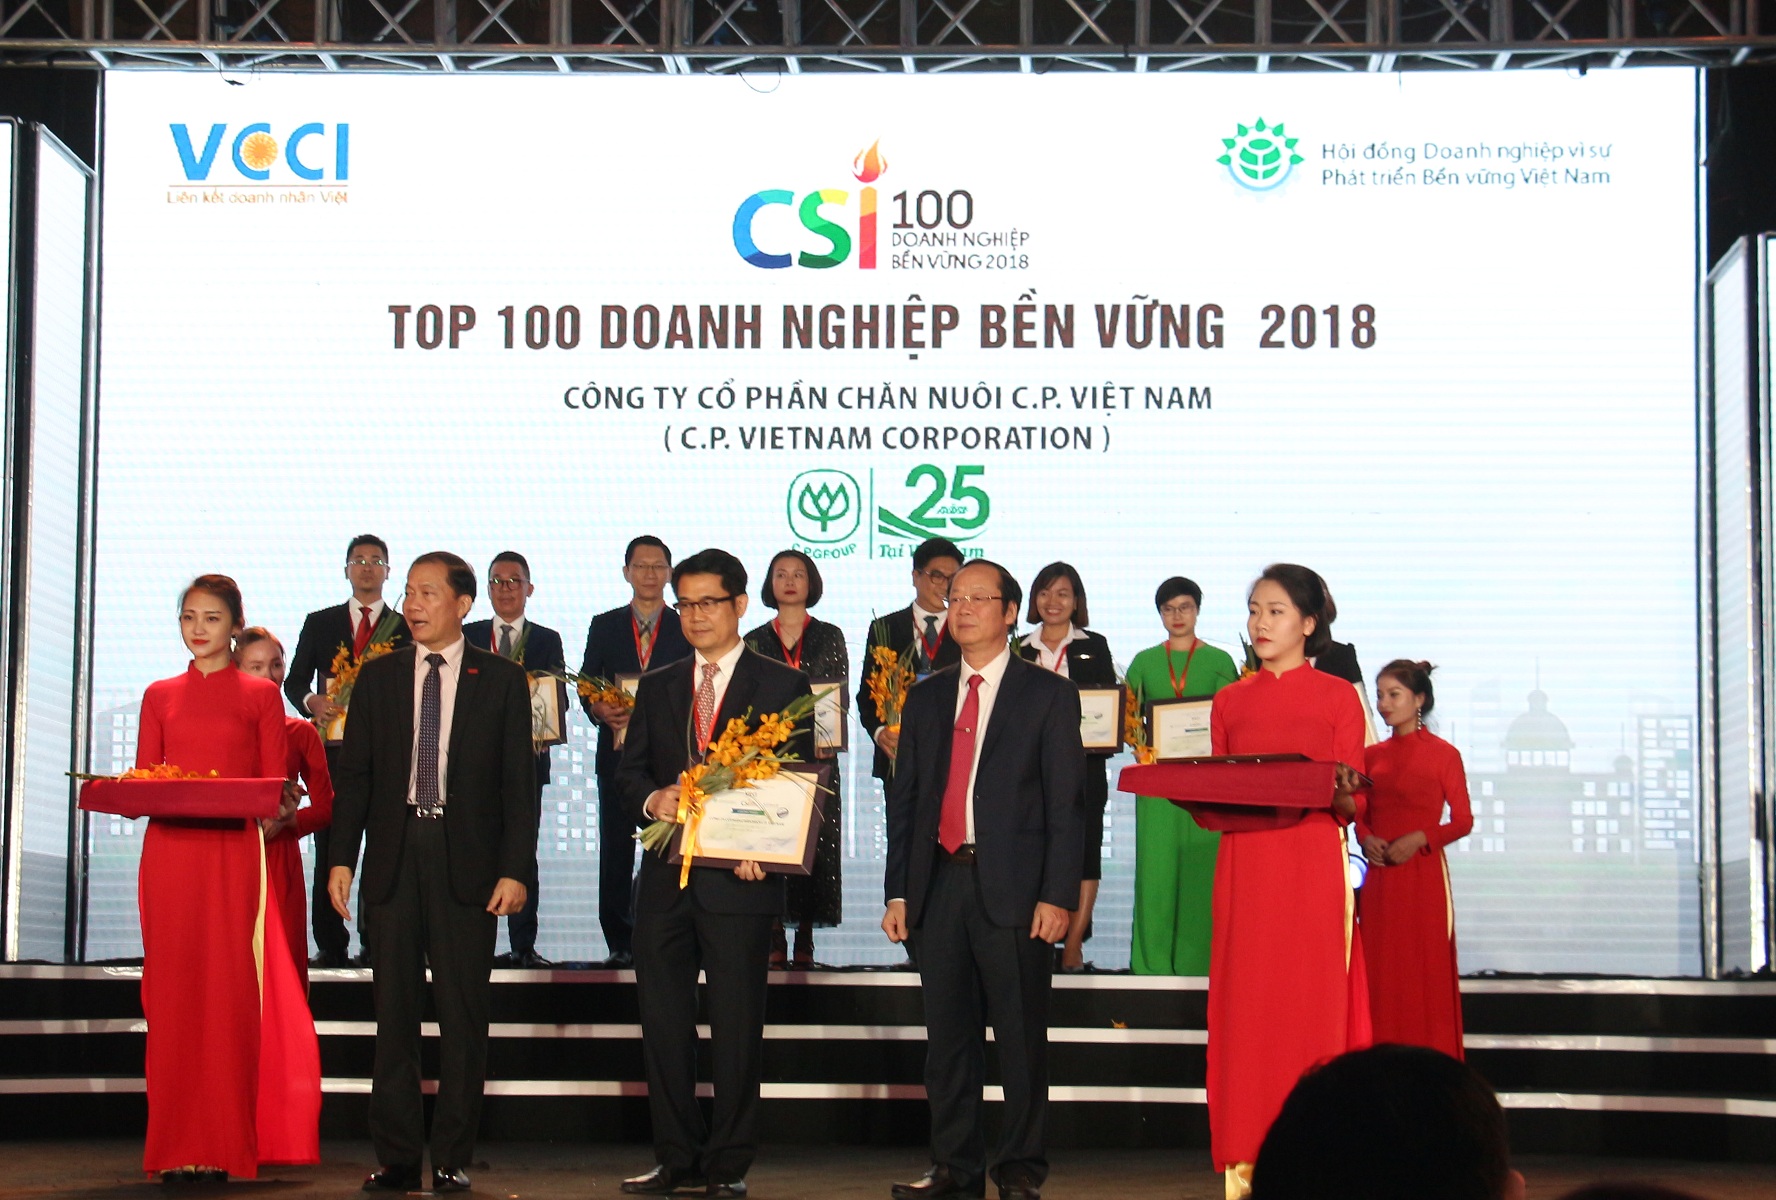 Công ty cổ phần chăn nuôi C.P. Việt Nam xếp thứ 13/100  doanh nghiệp bền vững năm 2018